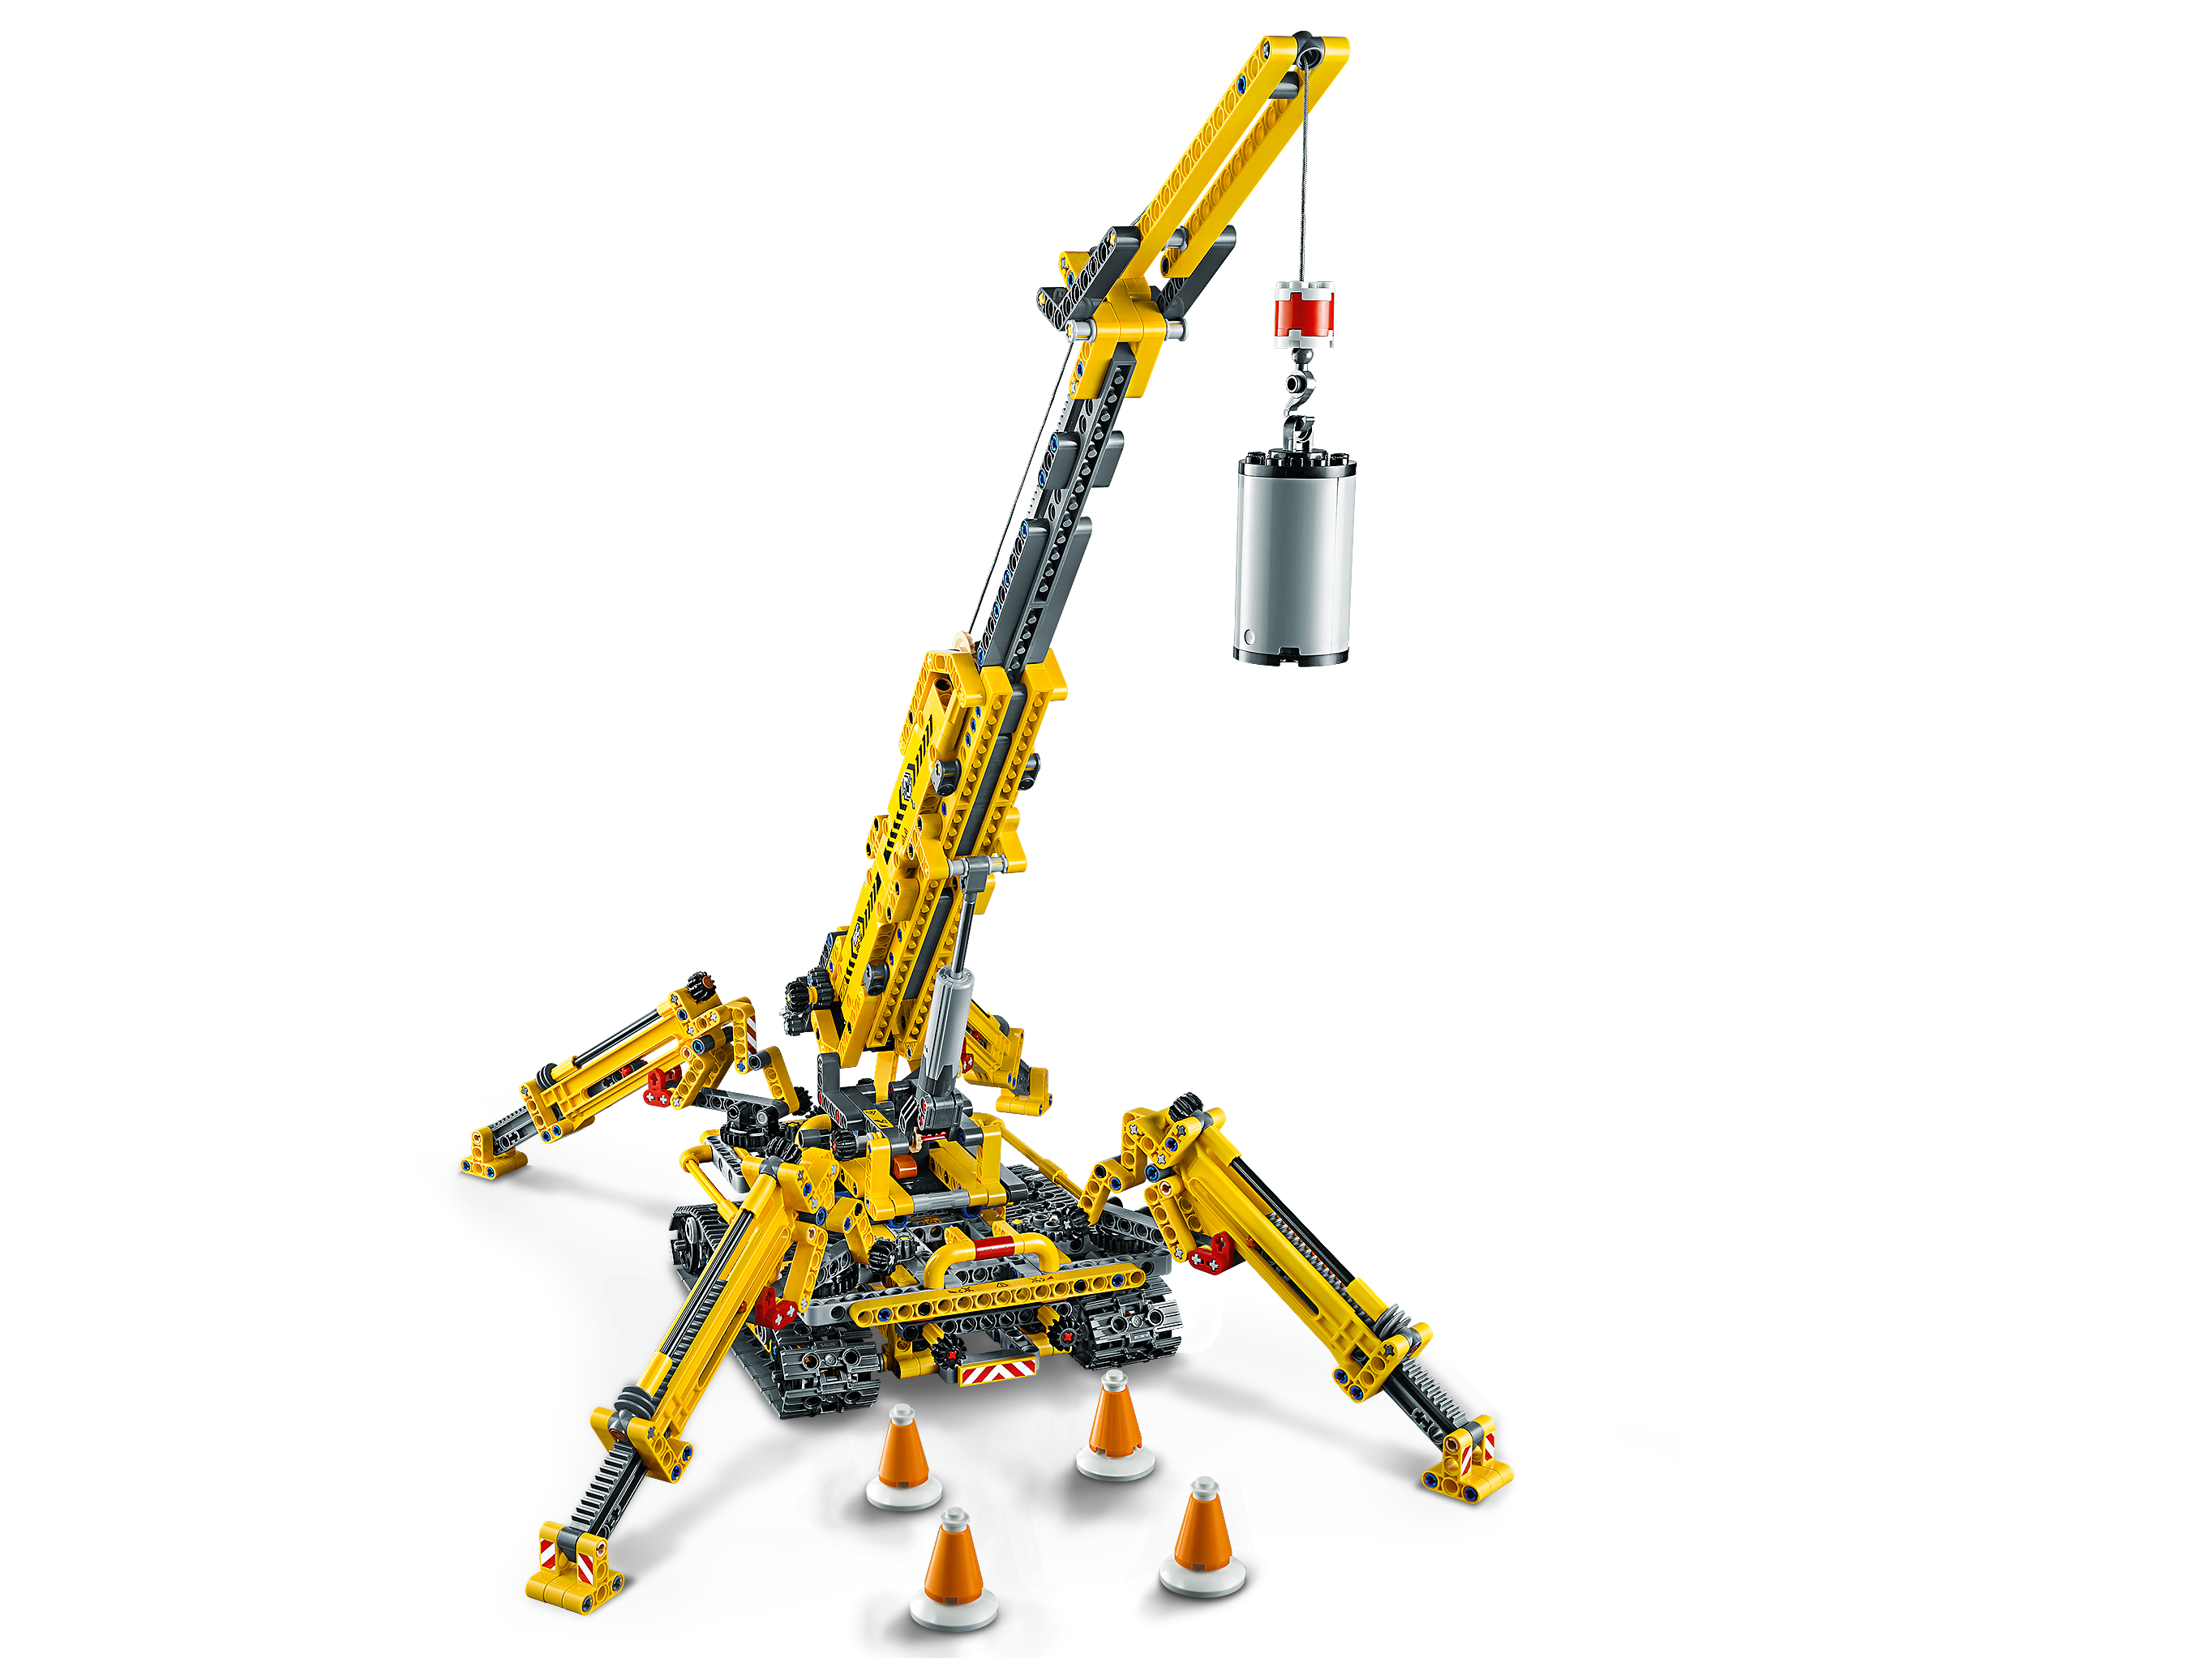 LEGO Technic 42097 - Gru Cingolata Compatta